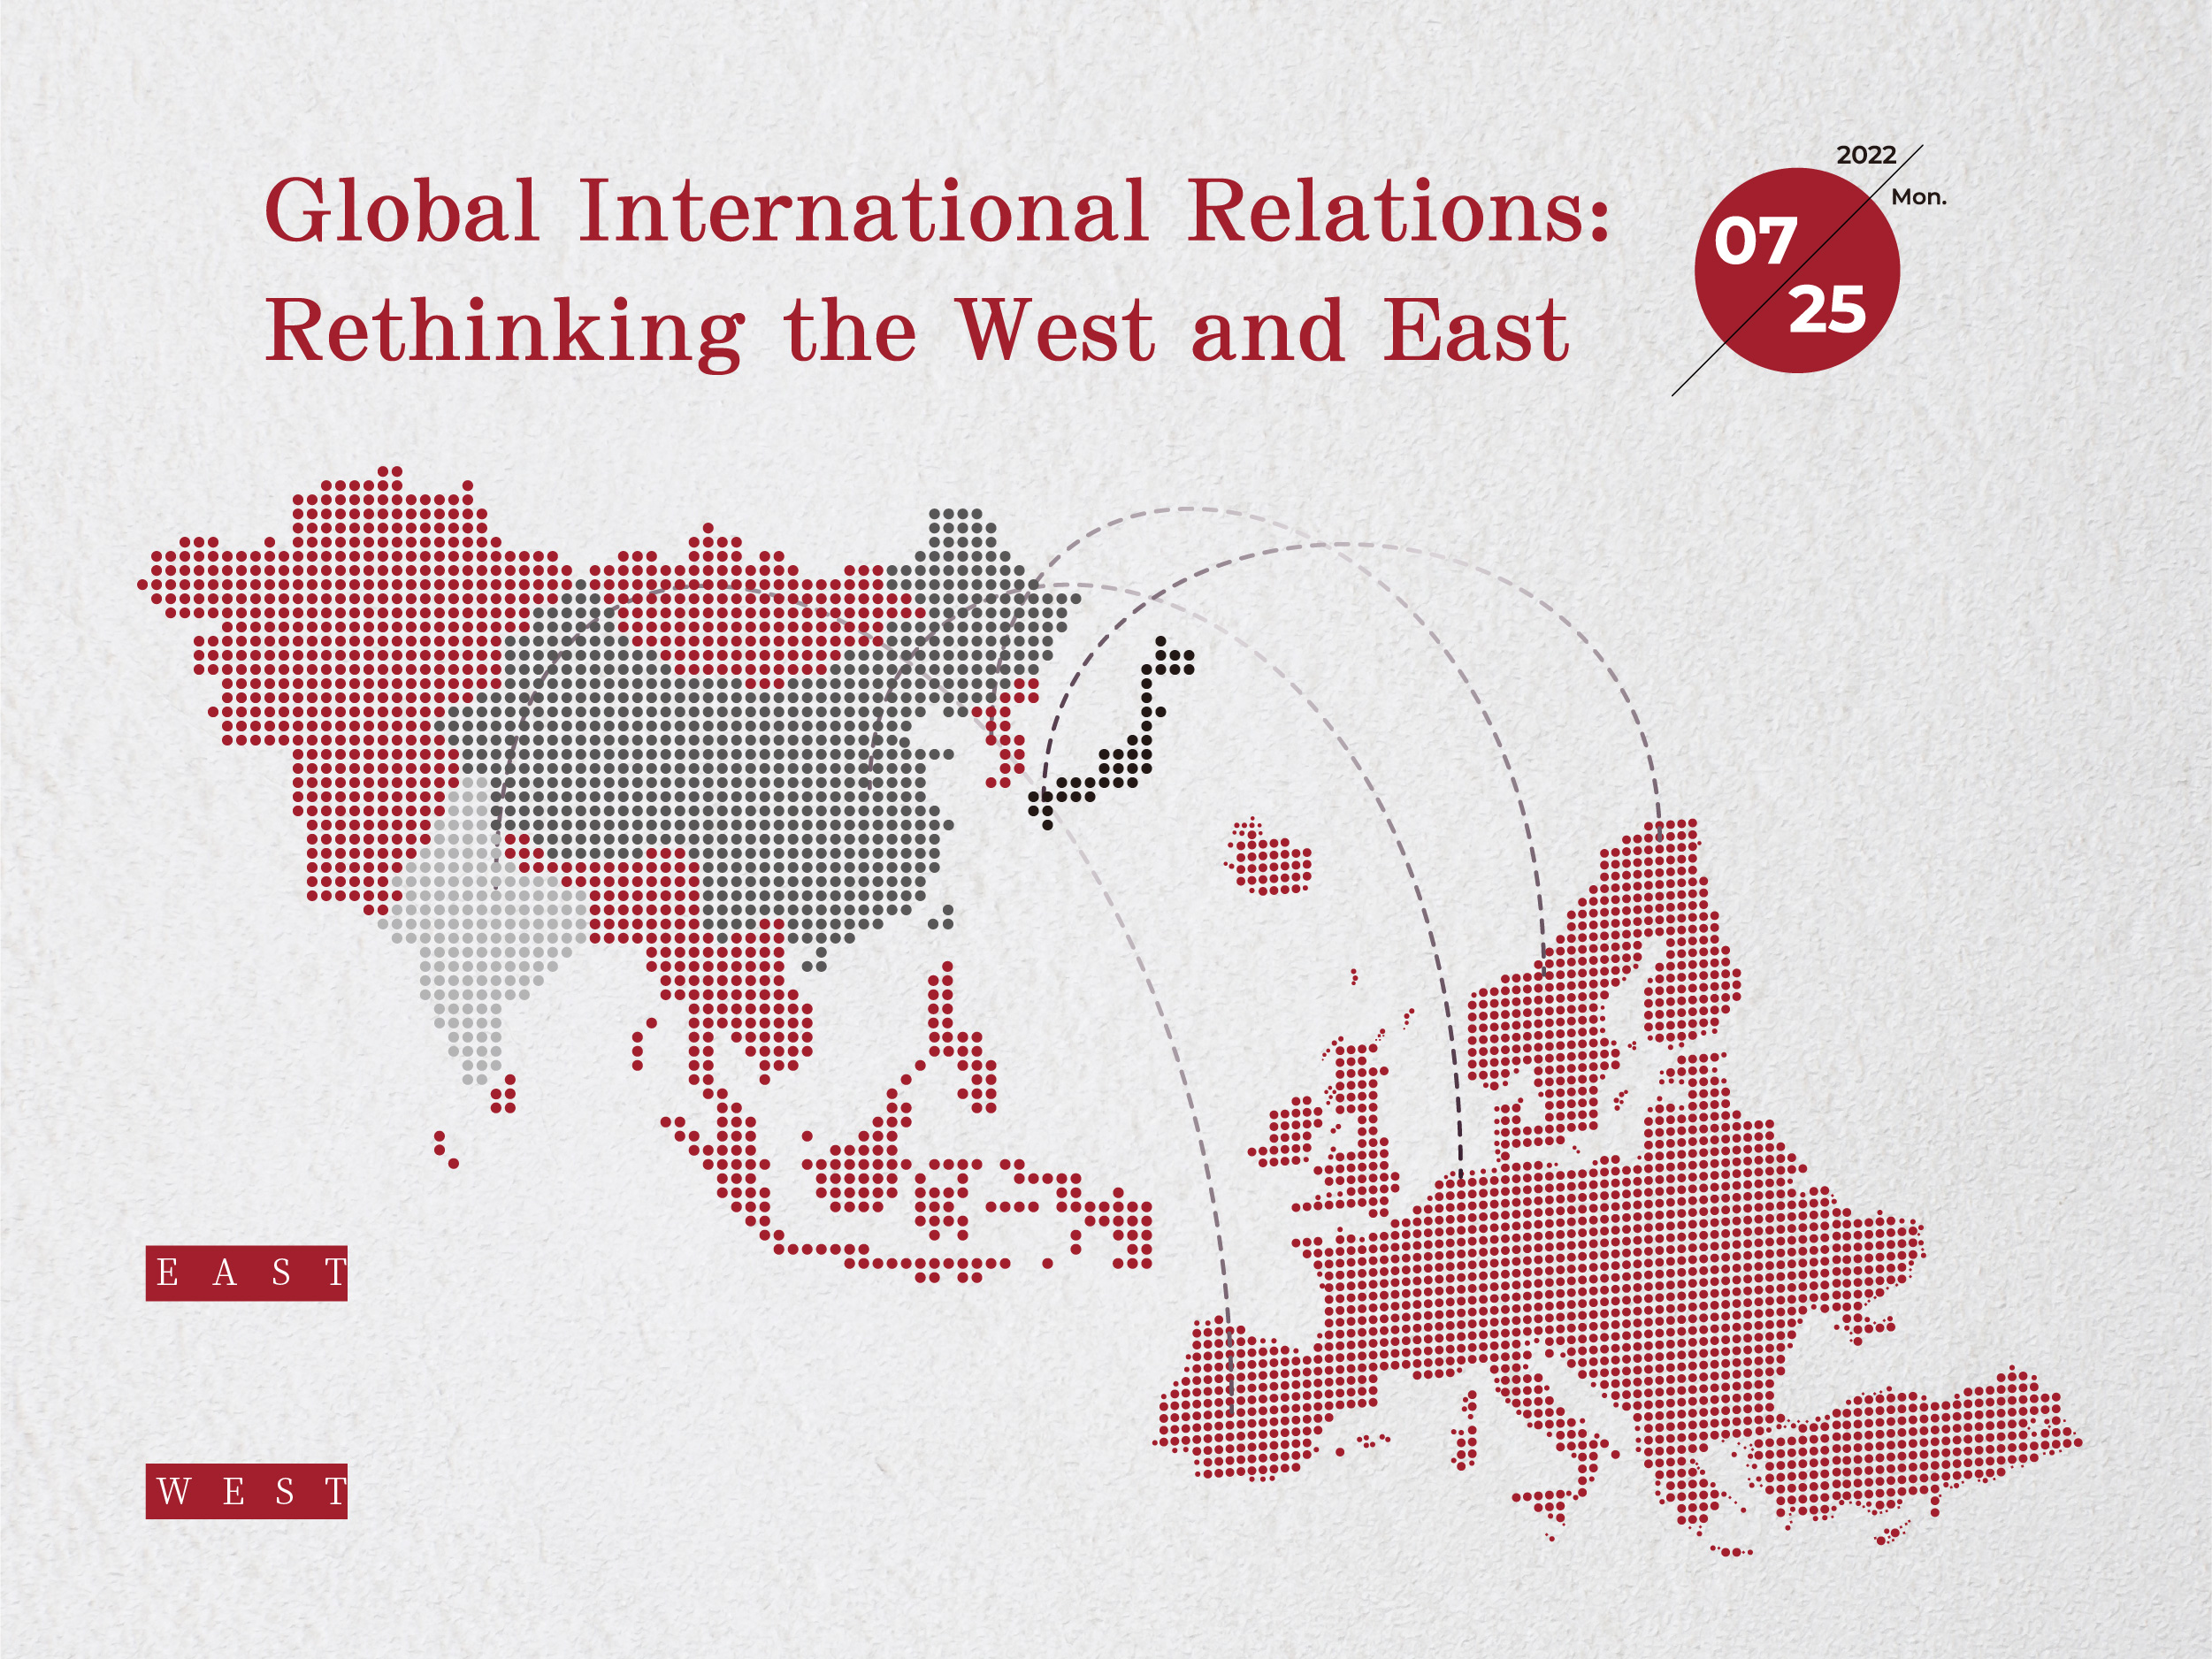 東西方論壇「Global International Relations: Rethinking the West and East」